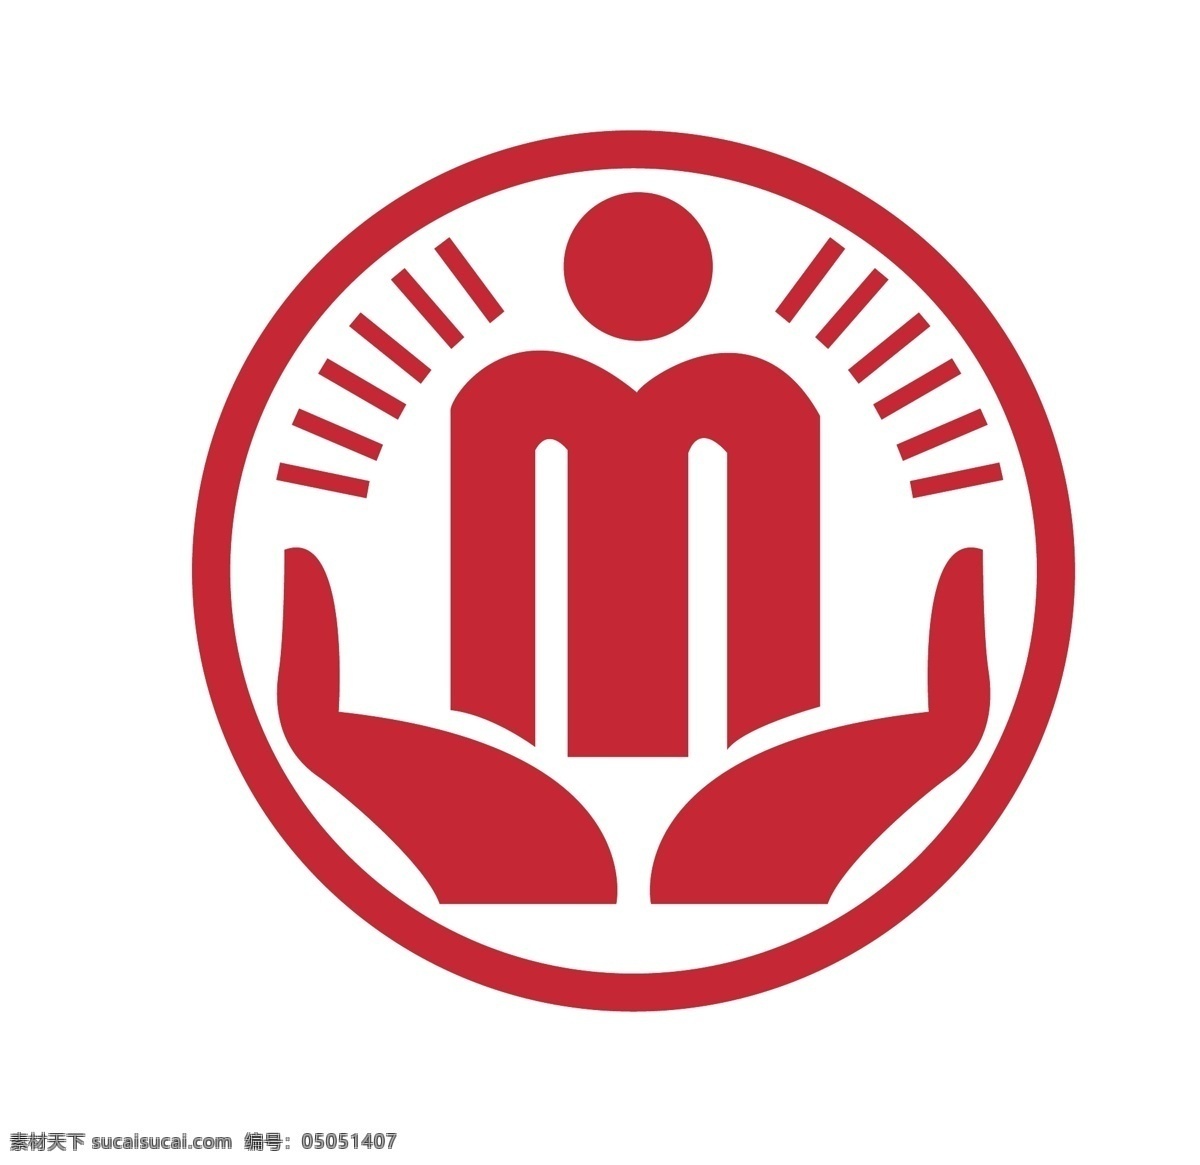 民政标志图片 民政标志 民政logo 结婚logo 民政 政府 标志logo logo设计